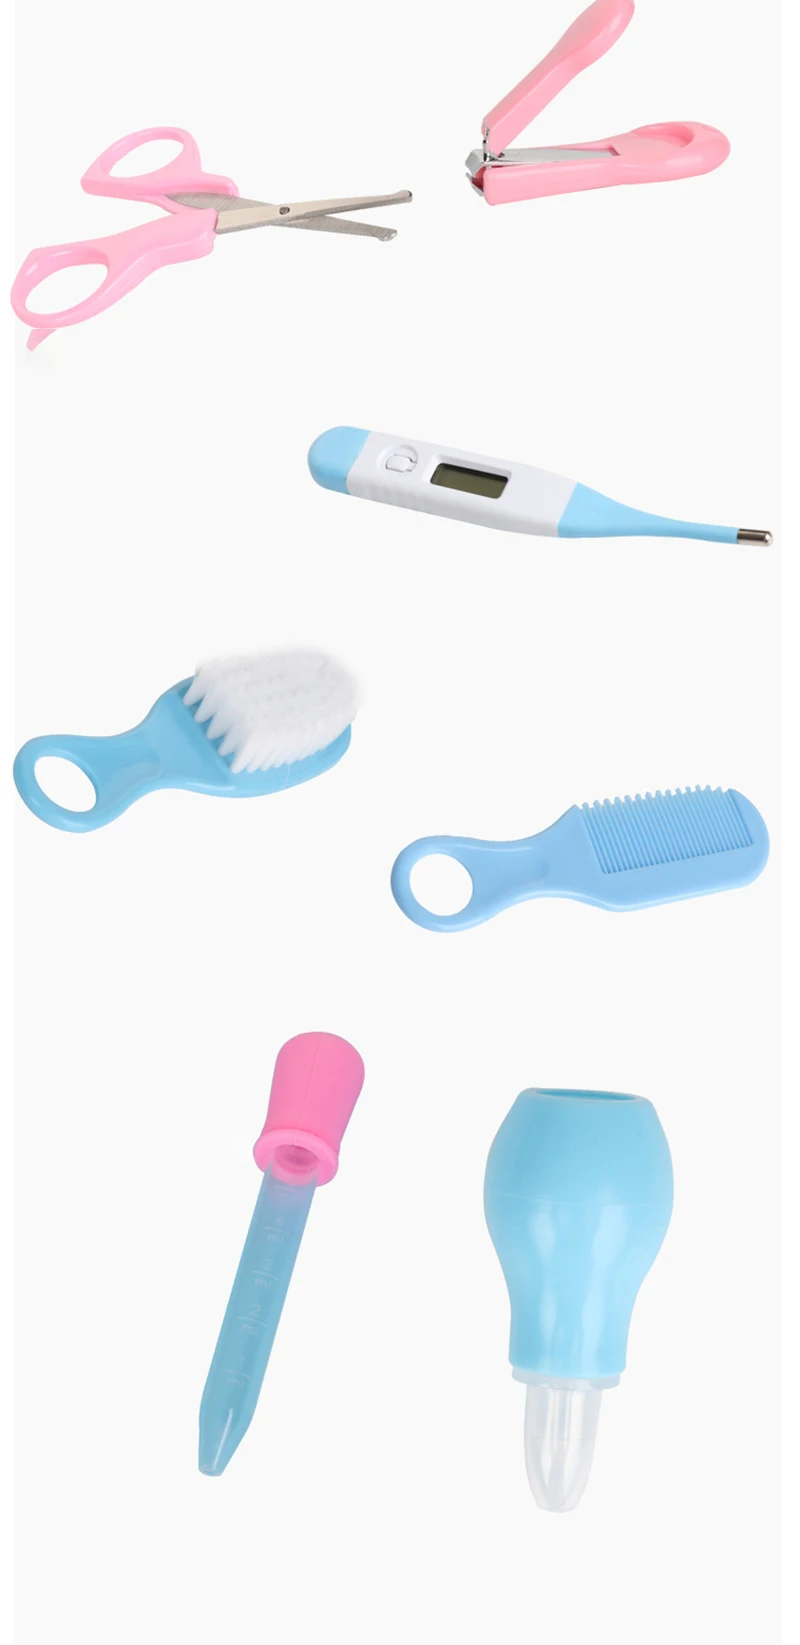 Набор для ухода за младенцами набор для ухода за ногтями гребень ножницы для новорожденных детей здоровье медицинские устройства набор